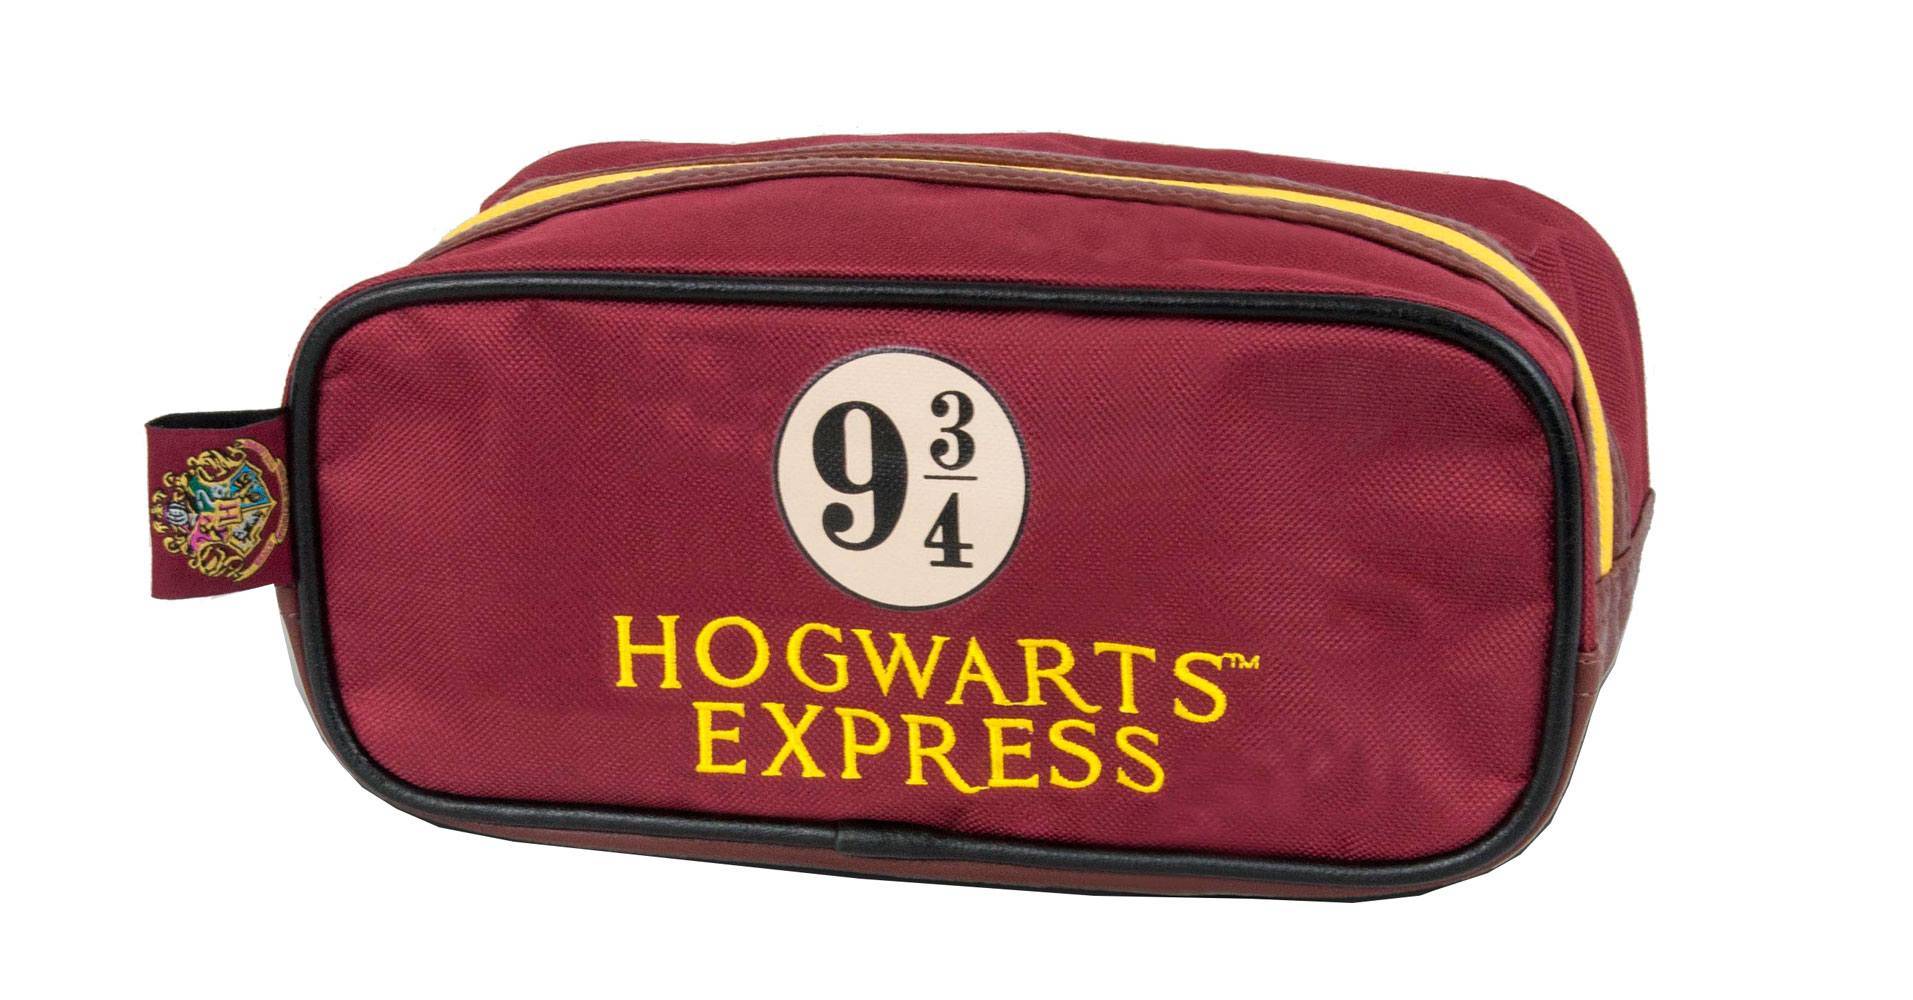 Sacs - Harry Potter trousse de toilette Hogwarts Express 9 3/4--Groovy